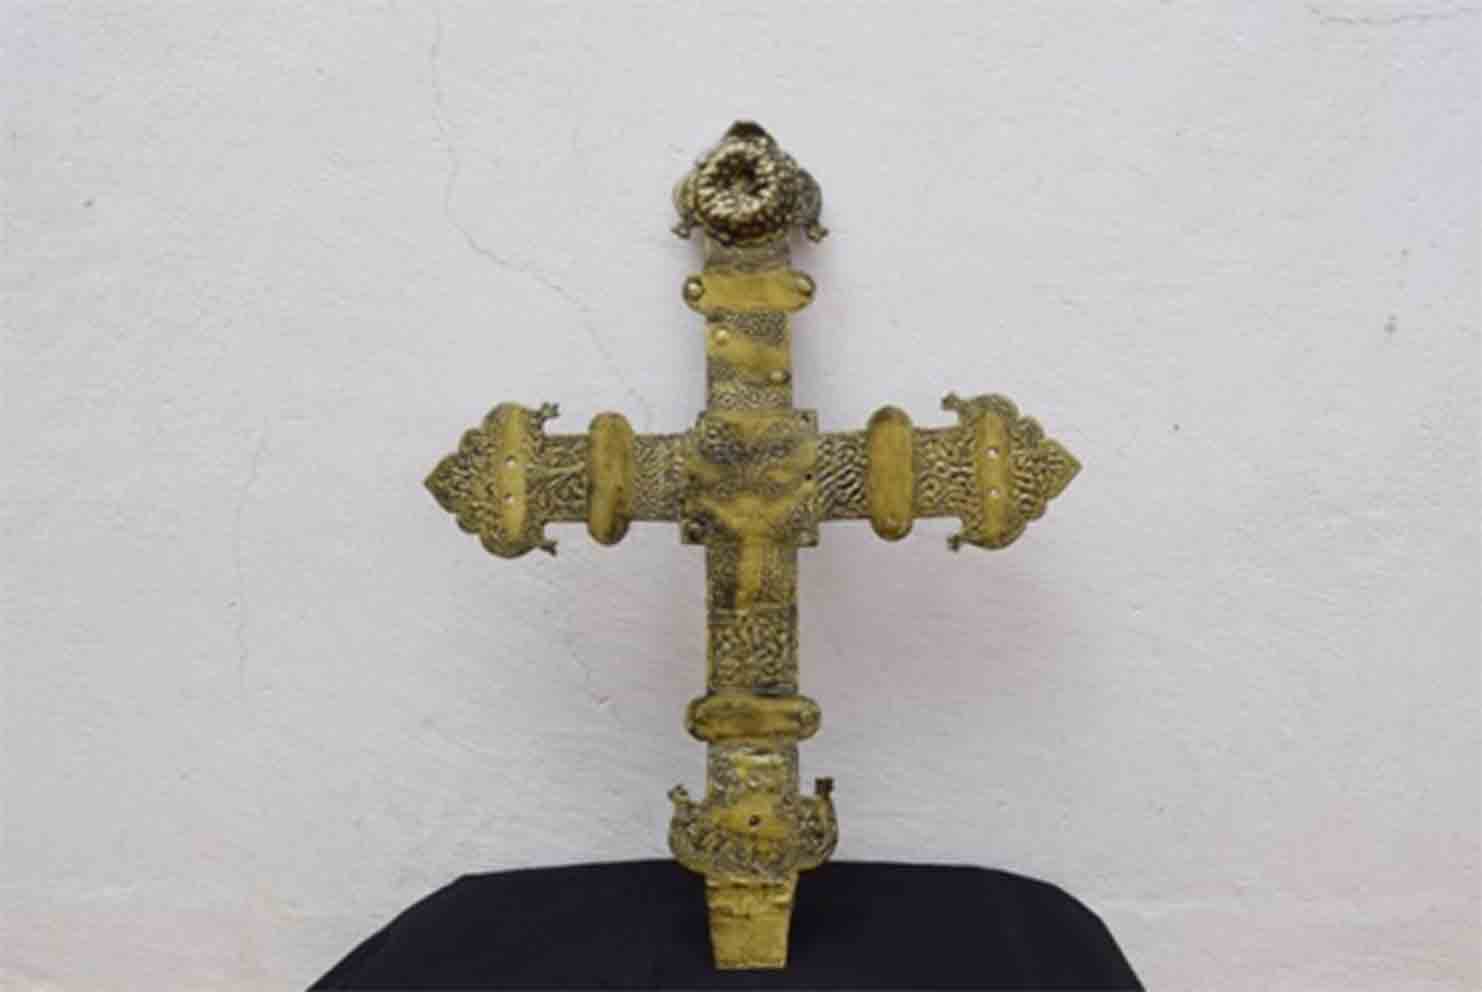 Así ha quedado la cruz tras la iniciativa del historiador del arte José Arturo Salgado Pantoja y el arqueólogo Gonzalo García Vegas.